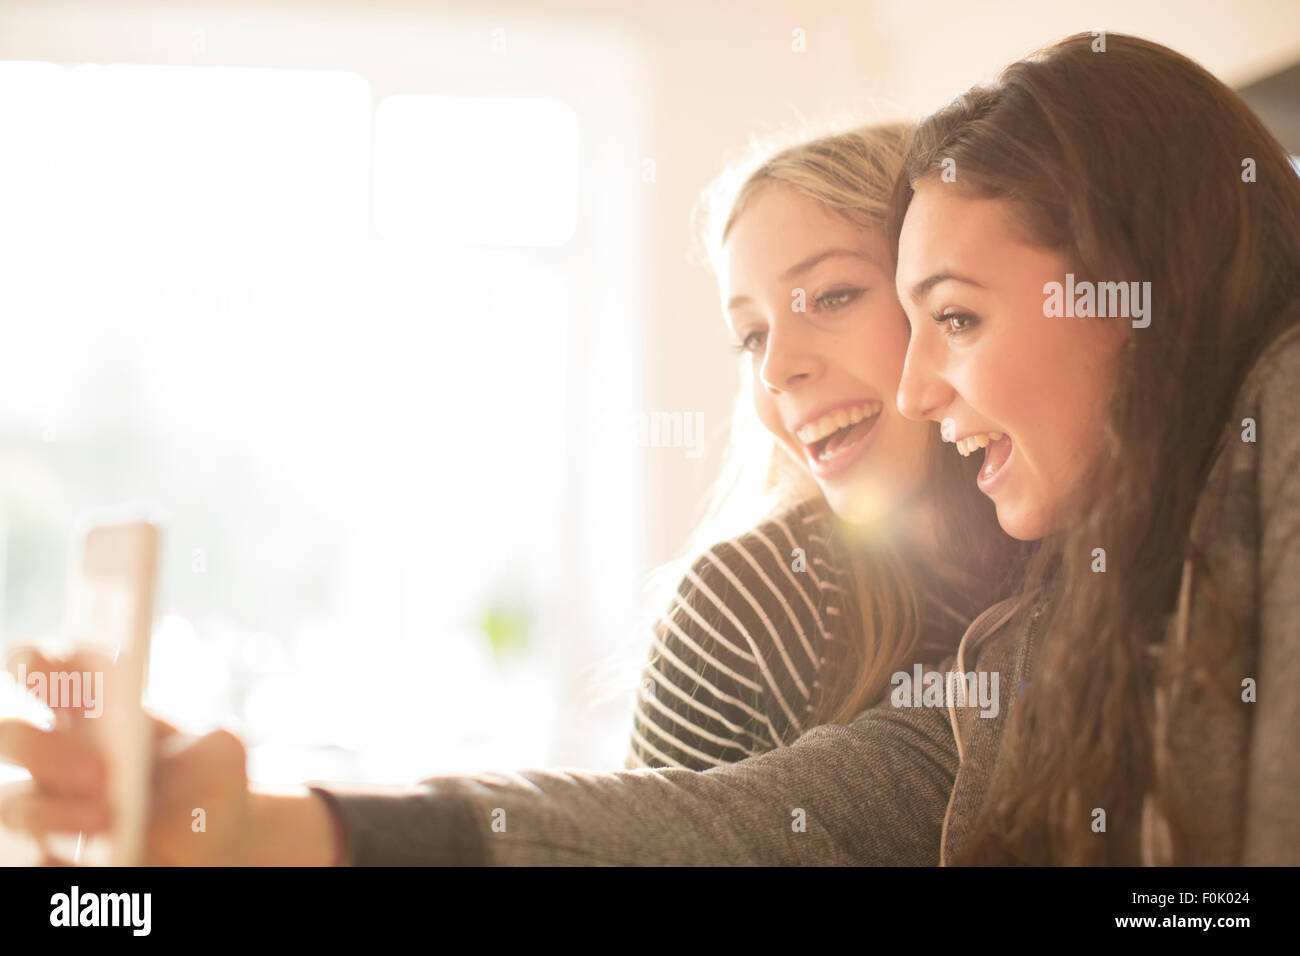 Mädchen im Teenageralter unter Selfie mit Kamera-Handy Stockfoto